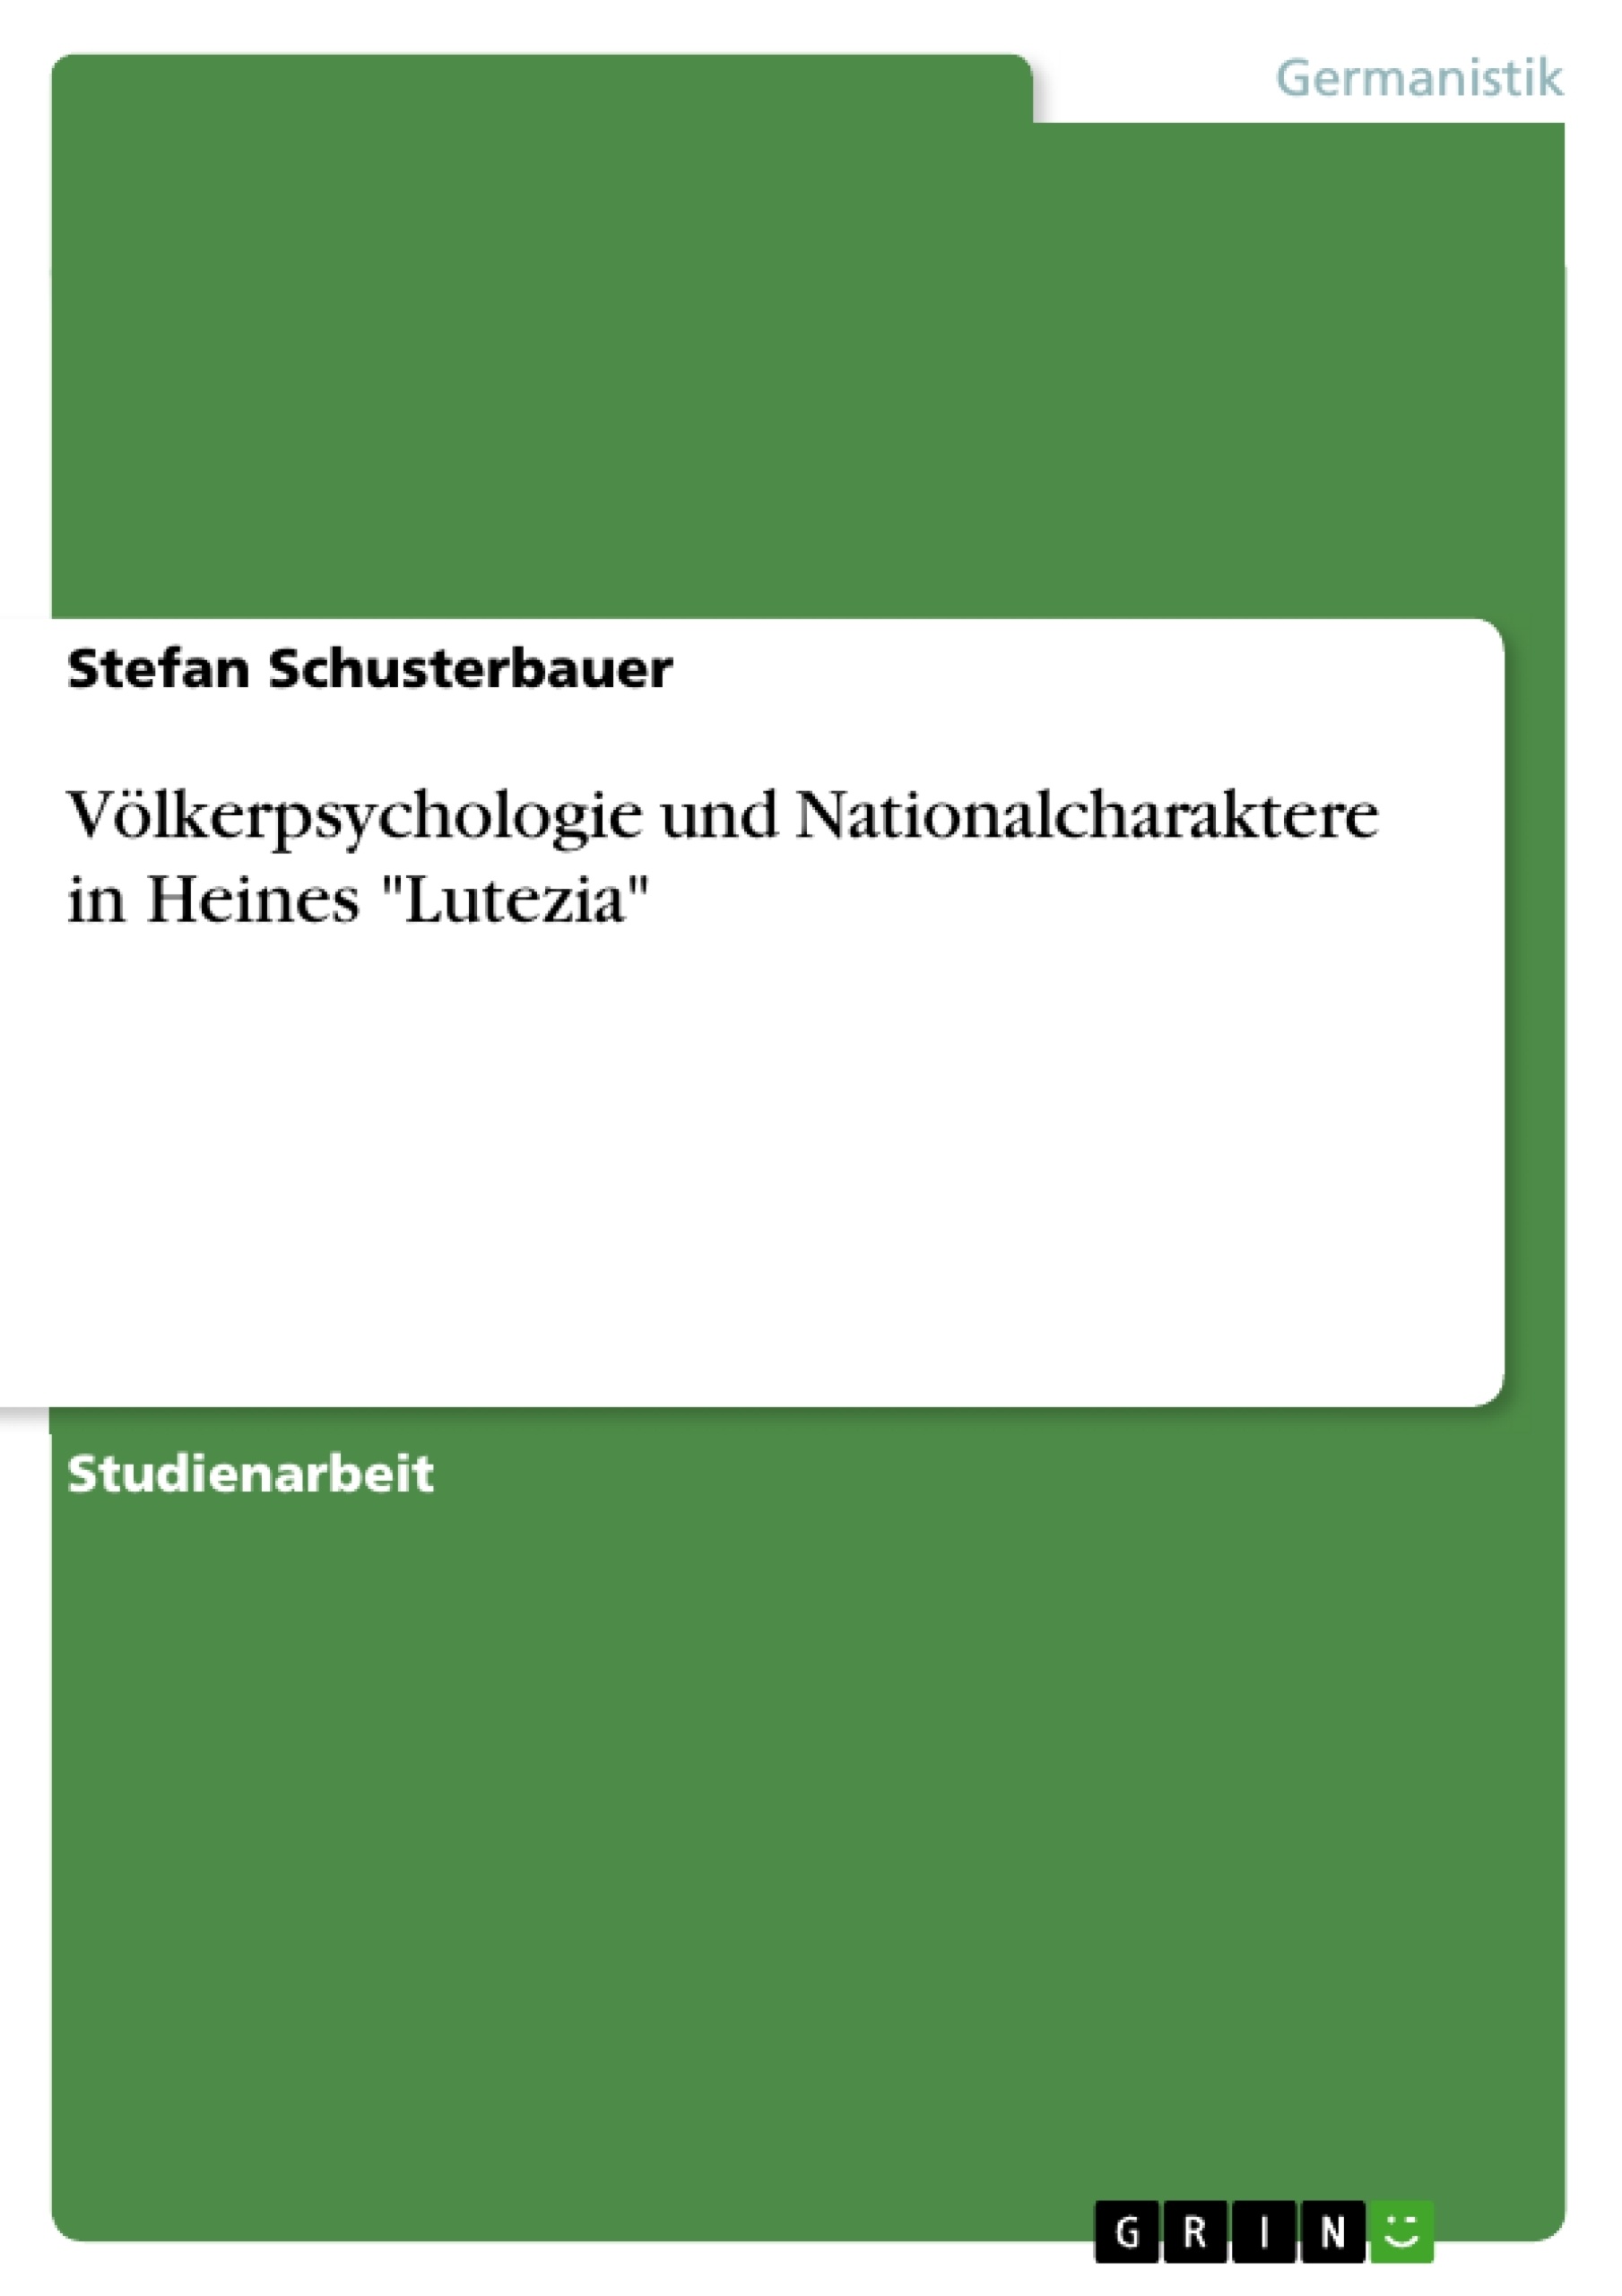 Title: Völkerpsychologie und Nationalcharaktere in Heines "Lutezia"